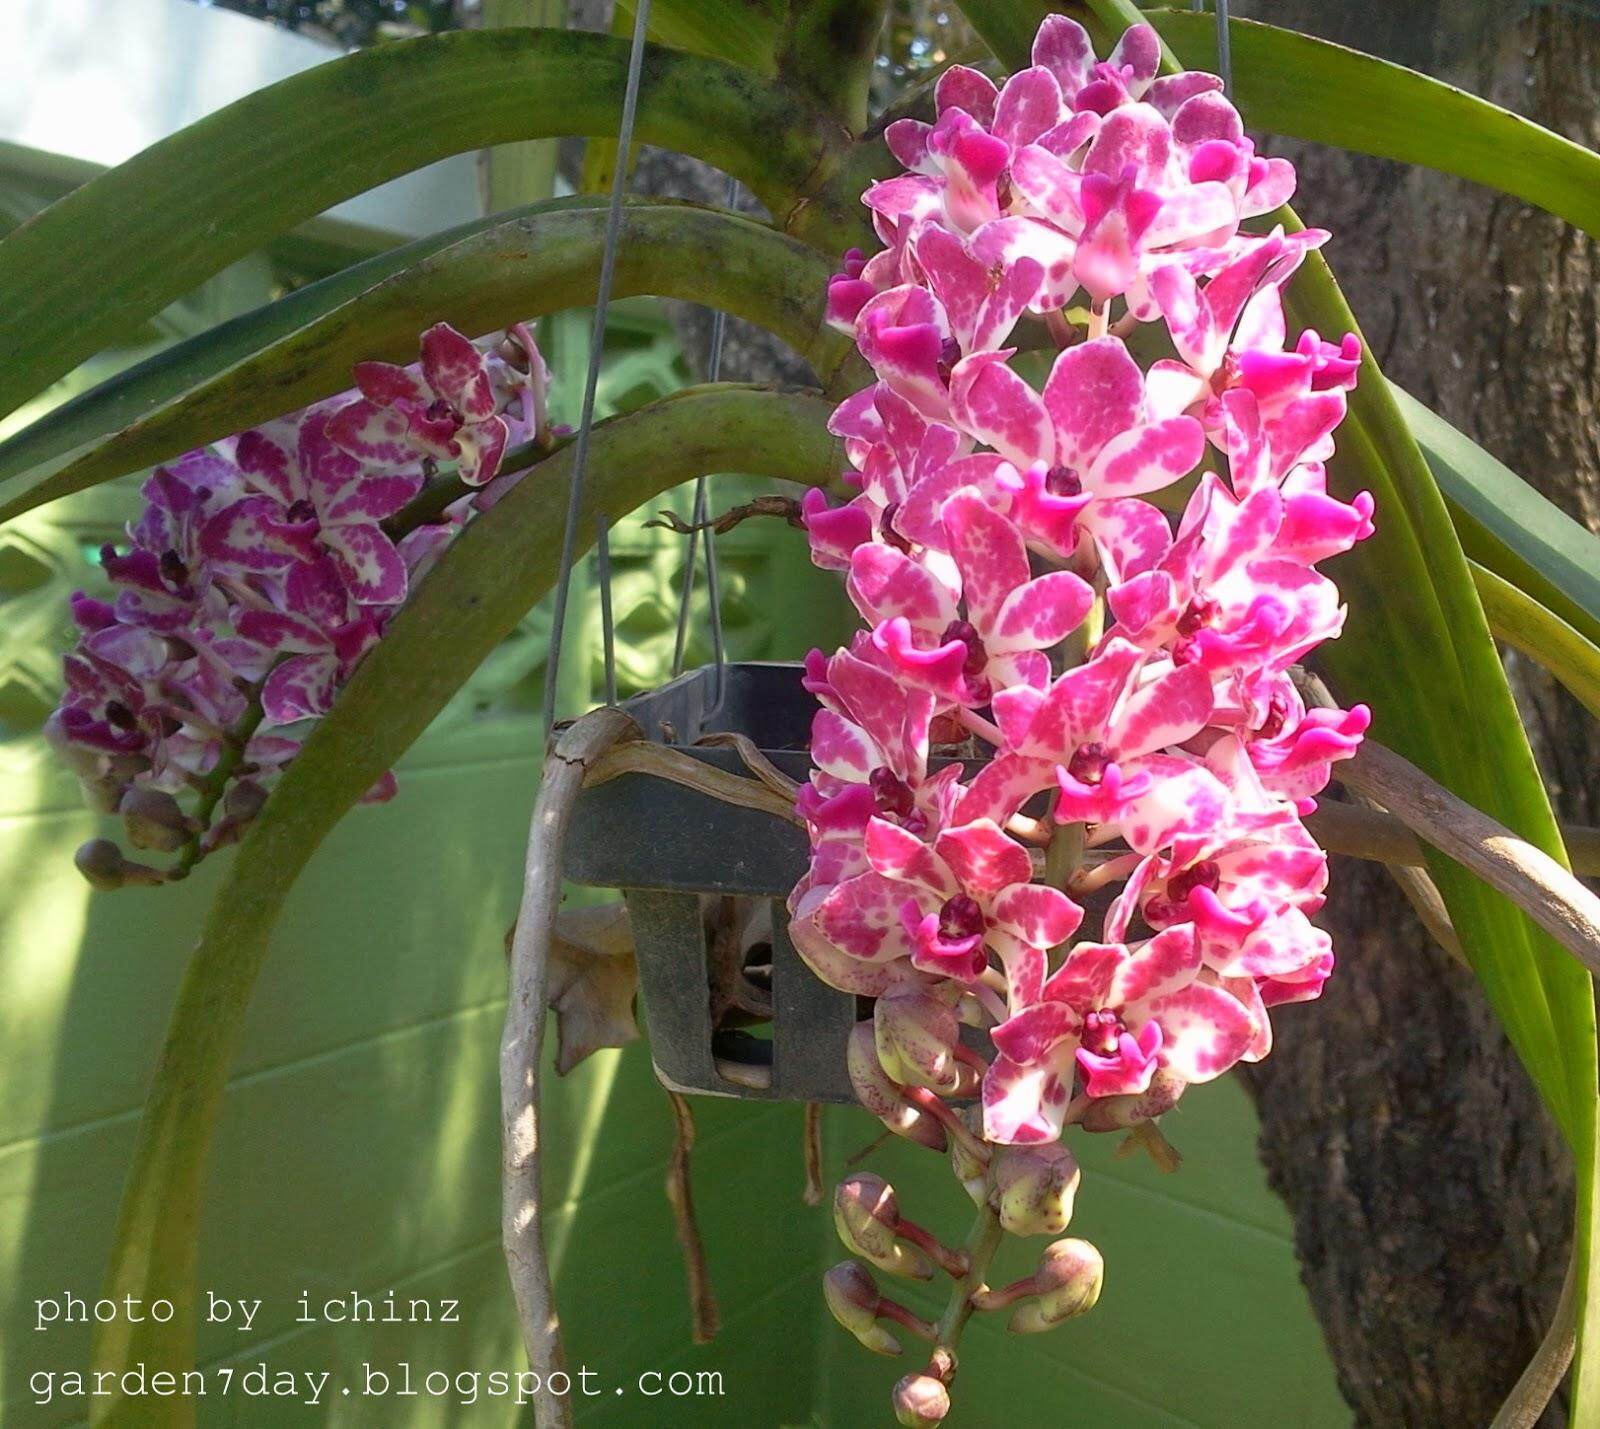 ต้นกล้วยไม้สกุลช้าง กล้วยไม้ช้างพลาย เป็นกล้วยไม้พันธุ์แท้ให้ดอกเป็นช่อกระจะ ออกดอกช่วงต้นปี เลี้ยงง่าย Thai orchids ขนาดกระถาง 2 นิ้ว ต้นไม้แข็งแรง ทุกต้น เรารับประกันจัดส่งห่ออย่างดี สี 6 ต้น